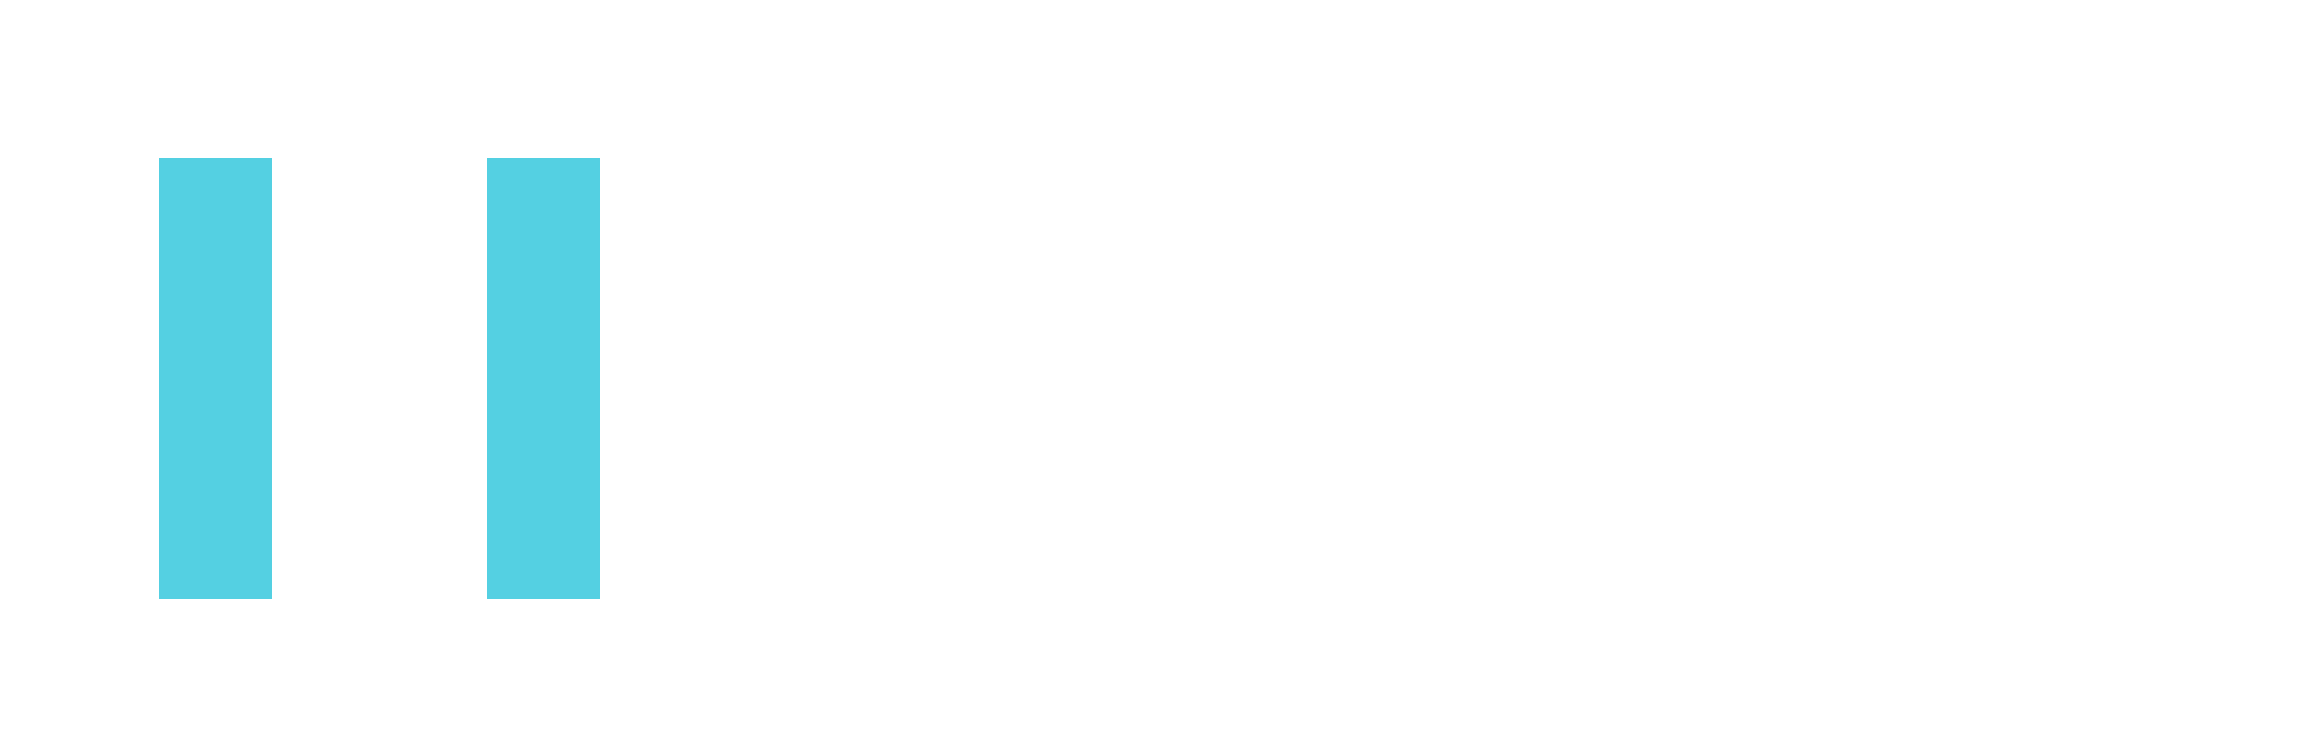 XenForo 2 Demo